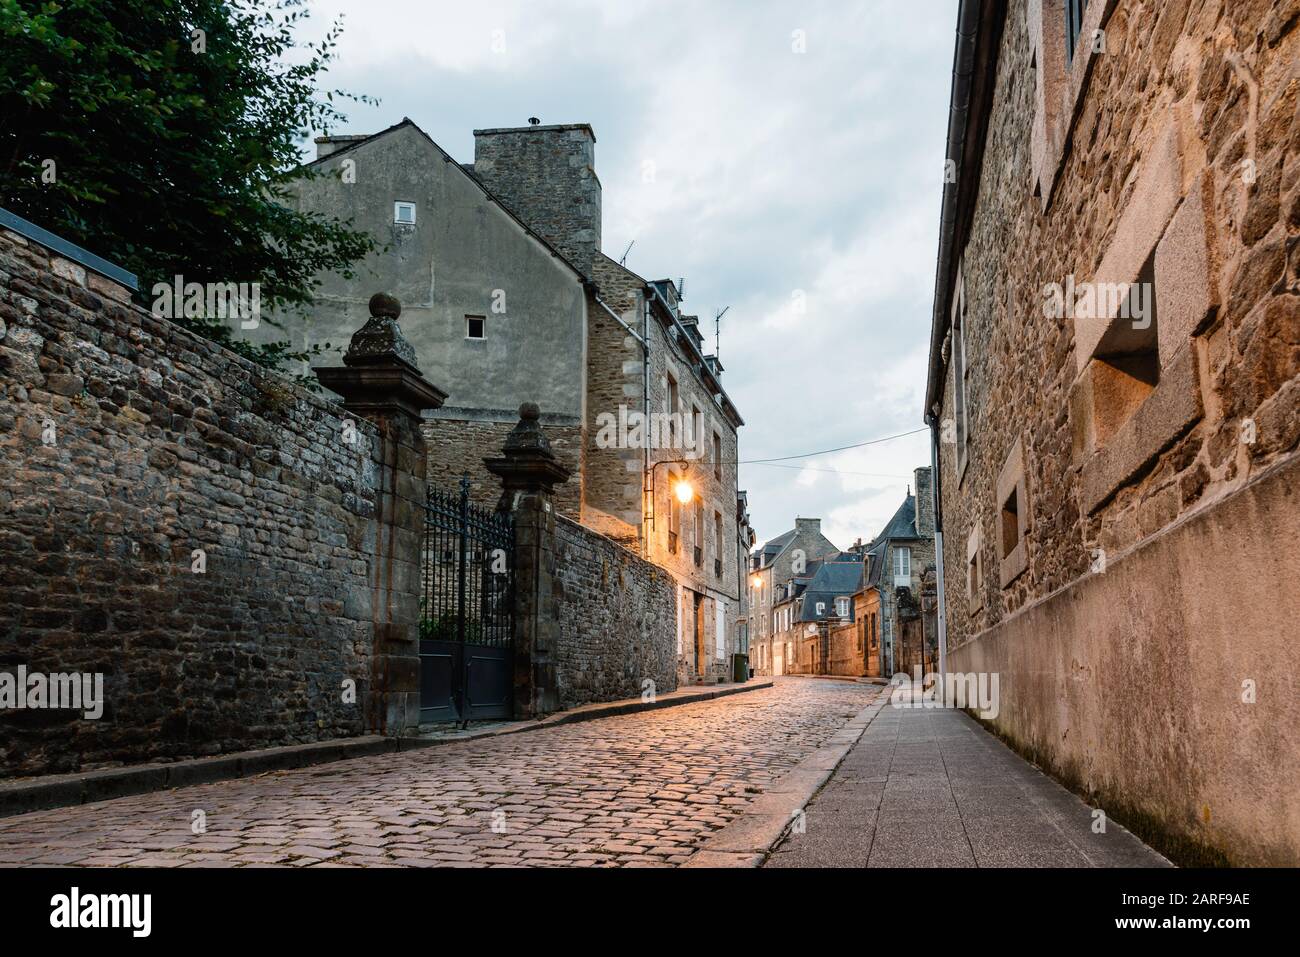 Ancienne rue pavée avec maisons médiévales en pierre dans le centre-ville de Dinan, Bretagne française. Banque D'Images